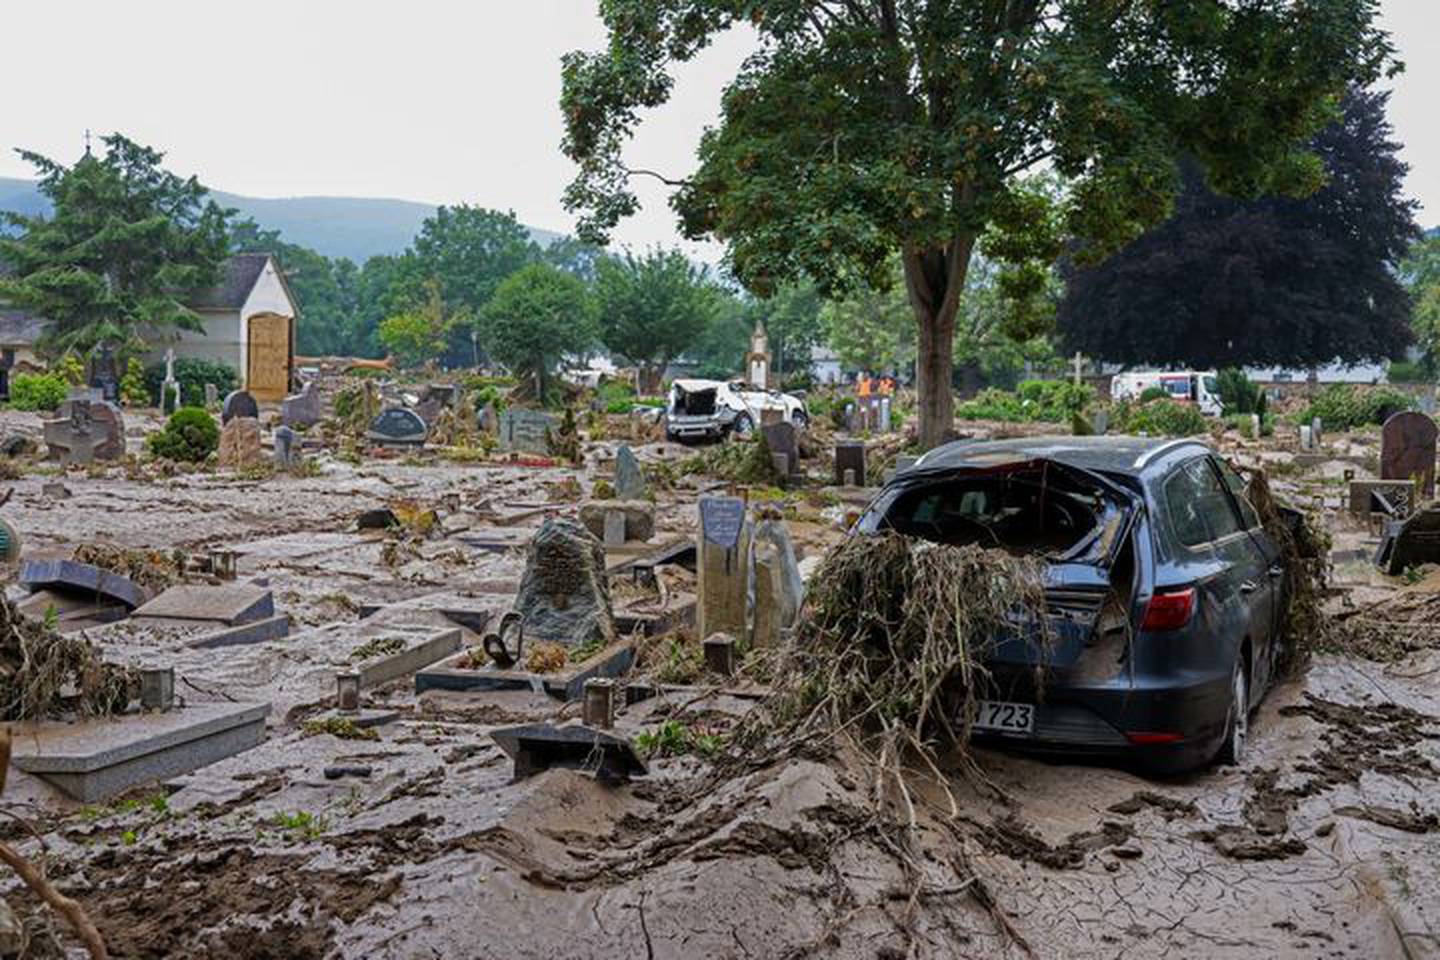 Bad Neuenahr-Ahrweiler, Alemania, 17 de julio. El calentamiento del clima ha potenciado las tormentas, lo que ha contribuido a las catastróficas inundaciones repentinas que han causado la muerte de al menos 170 personas en el país. Liesa Johannssen-Koppitz/Bloombergdfd